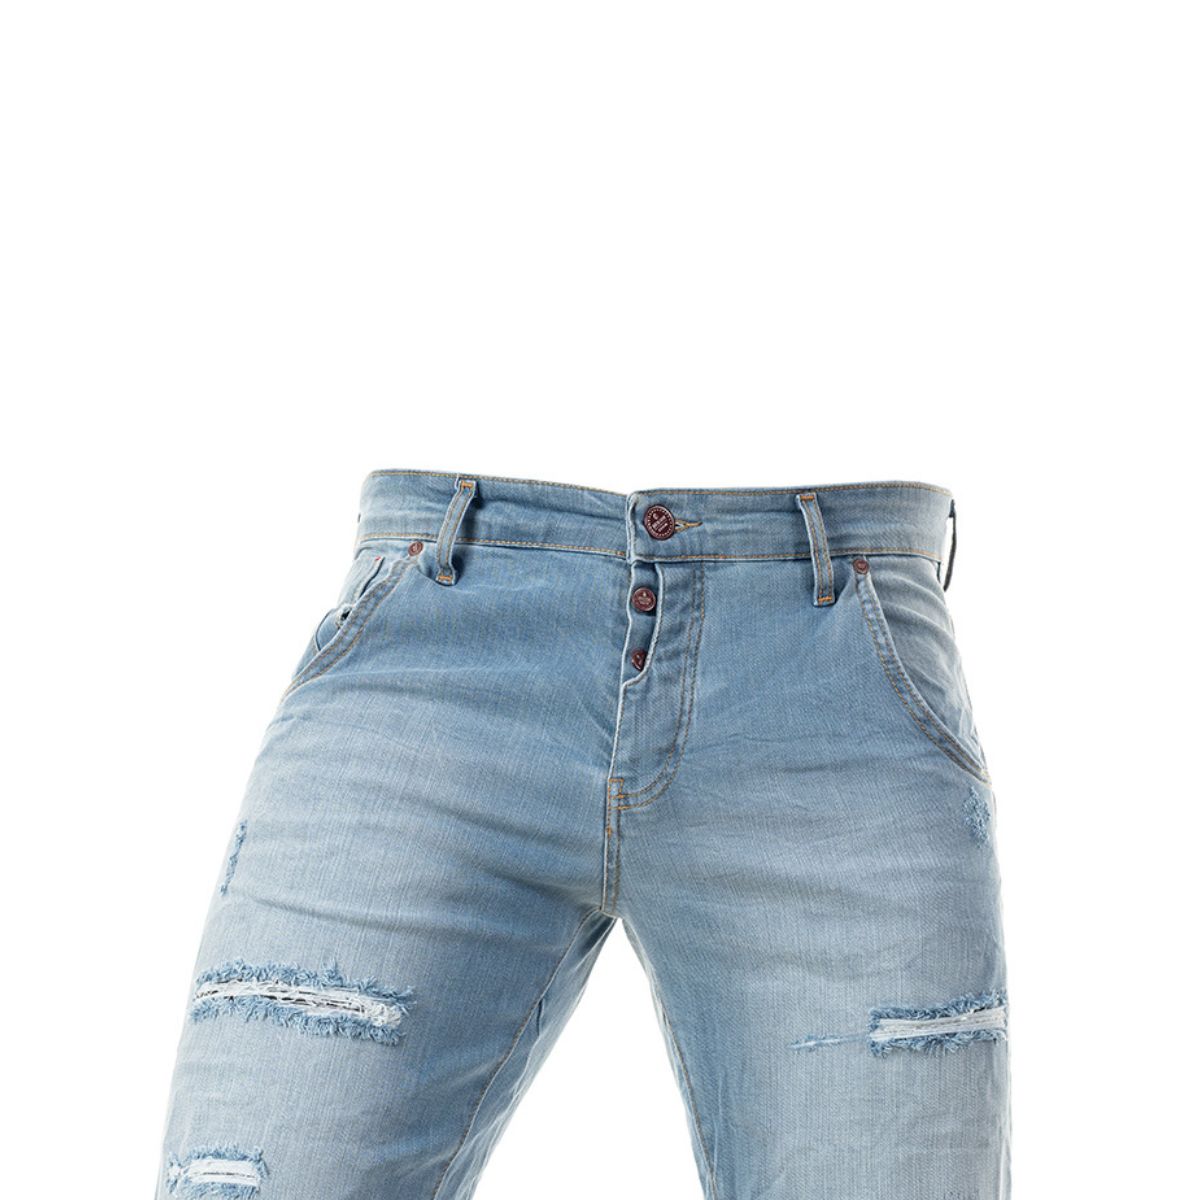 Ανδρική Βερμούδα Jeans Senior με Σκισίματα (3273) - BLUE - Panda Clothing